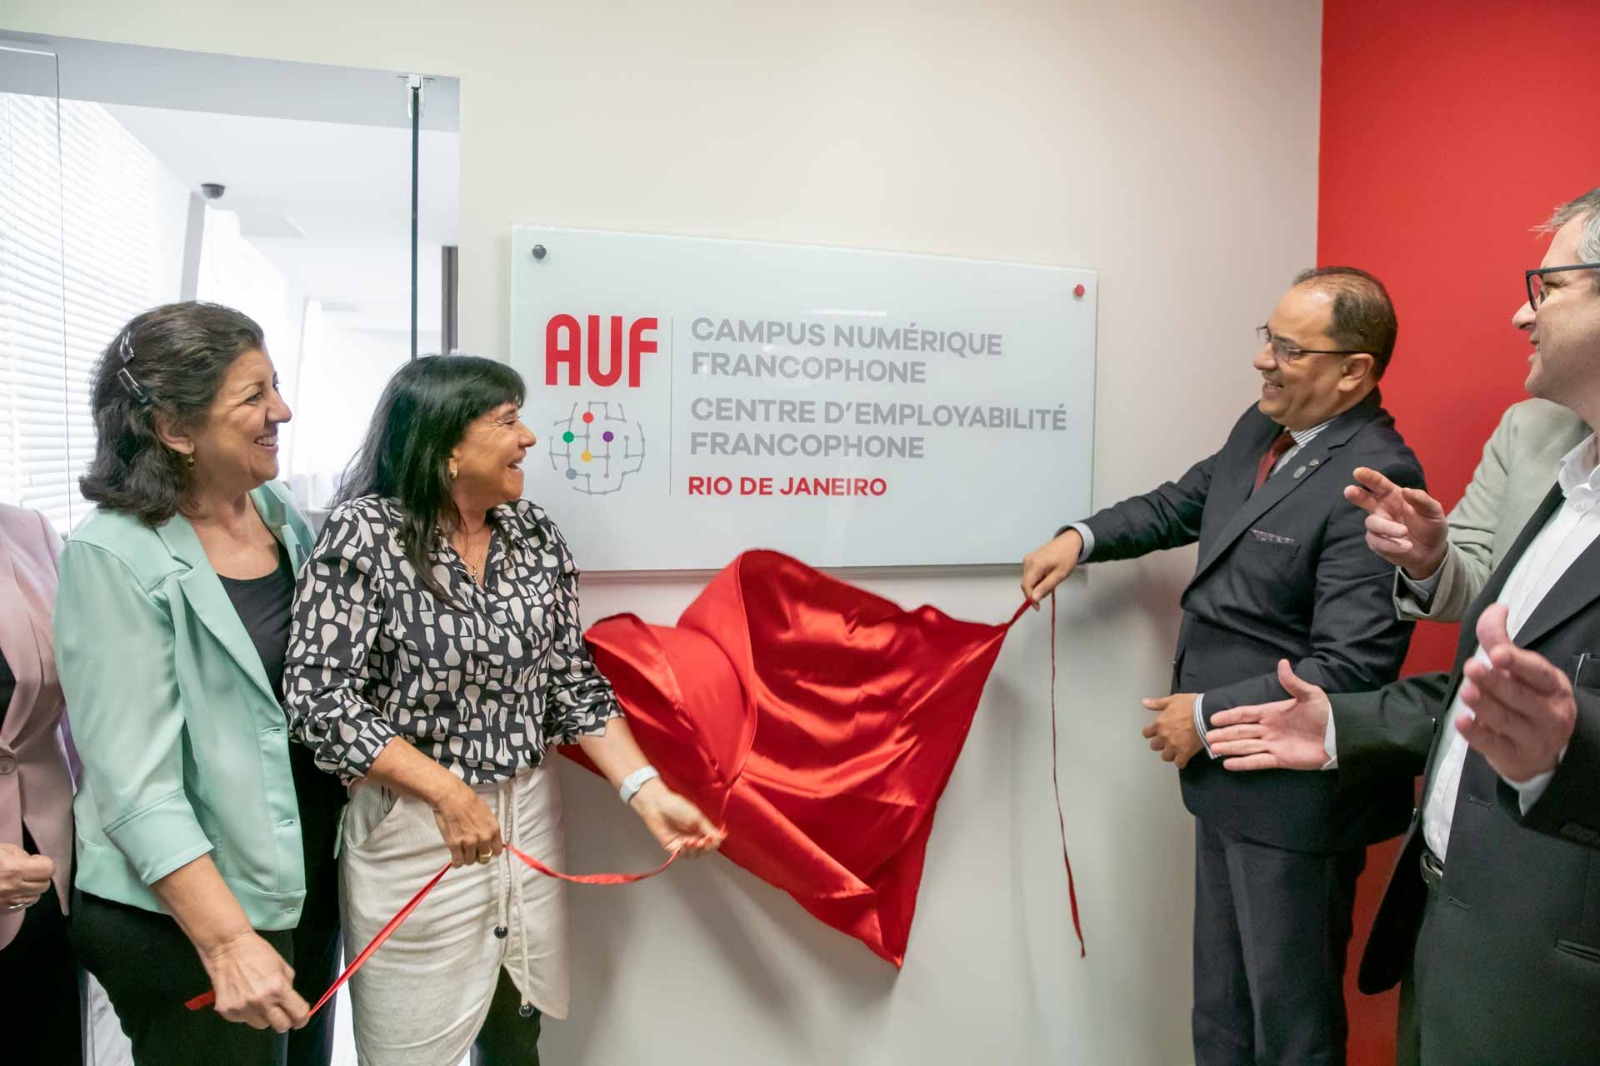 Duas mulheres.e dois homens retiram tecido vermelho da placa de inauguração da AUF, onde se lê, em francês: Campus Numerique Francophone | Centre Démployabilité Francophone Rio de Janeiro